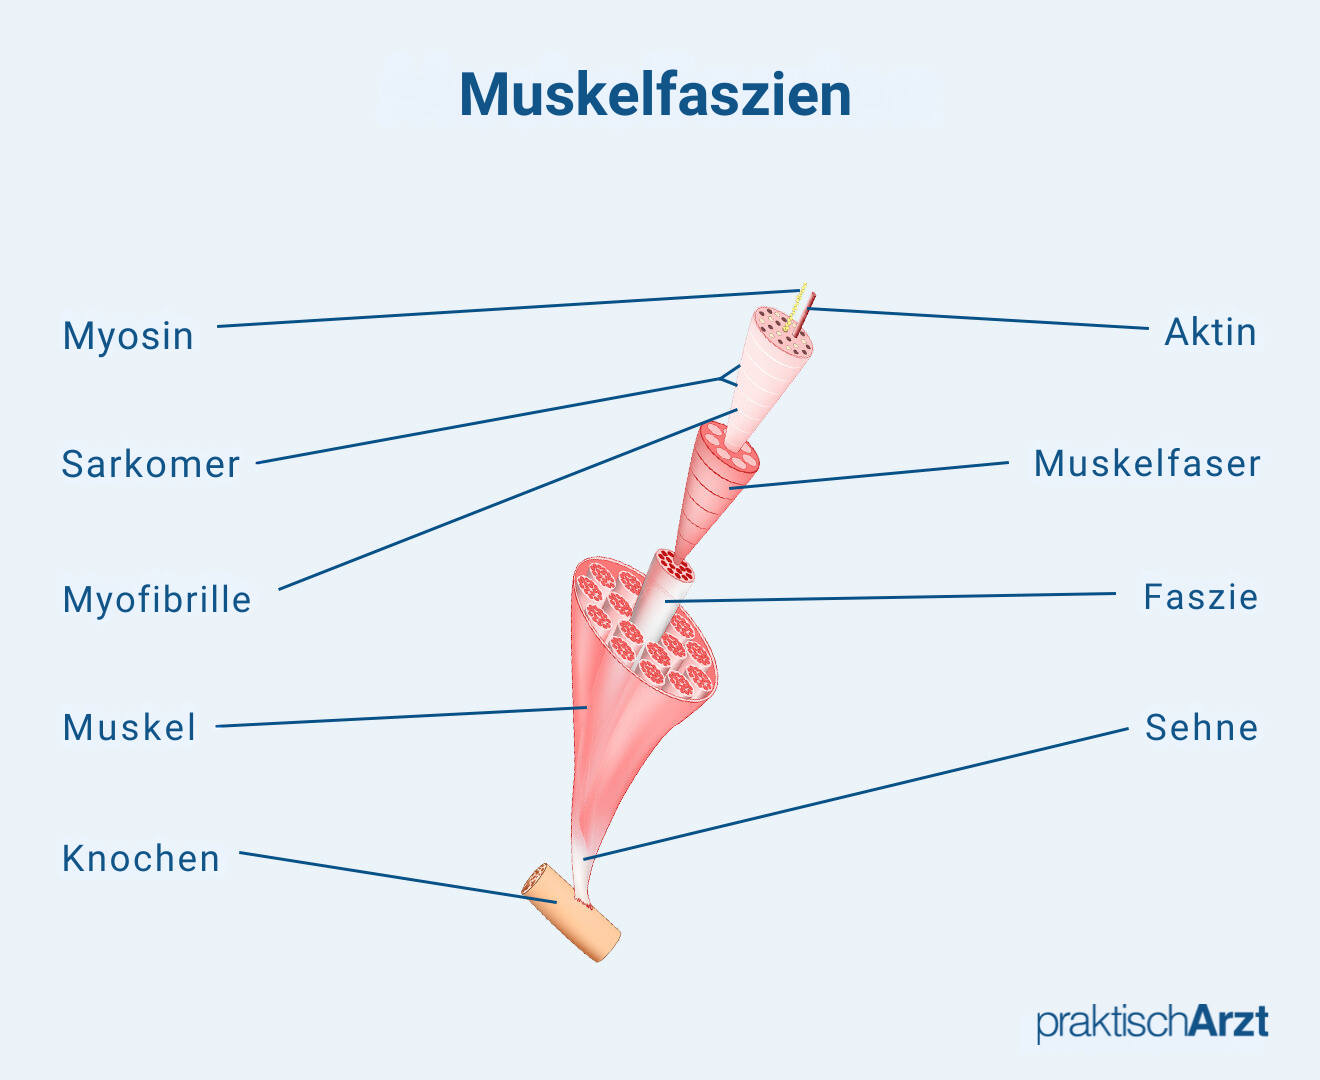 Muskelfaszien